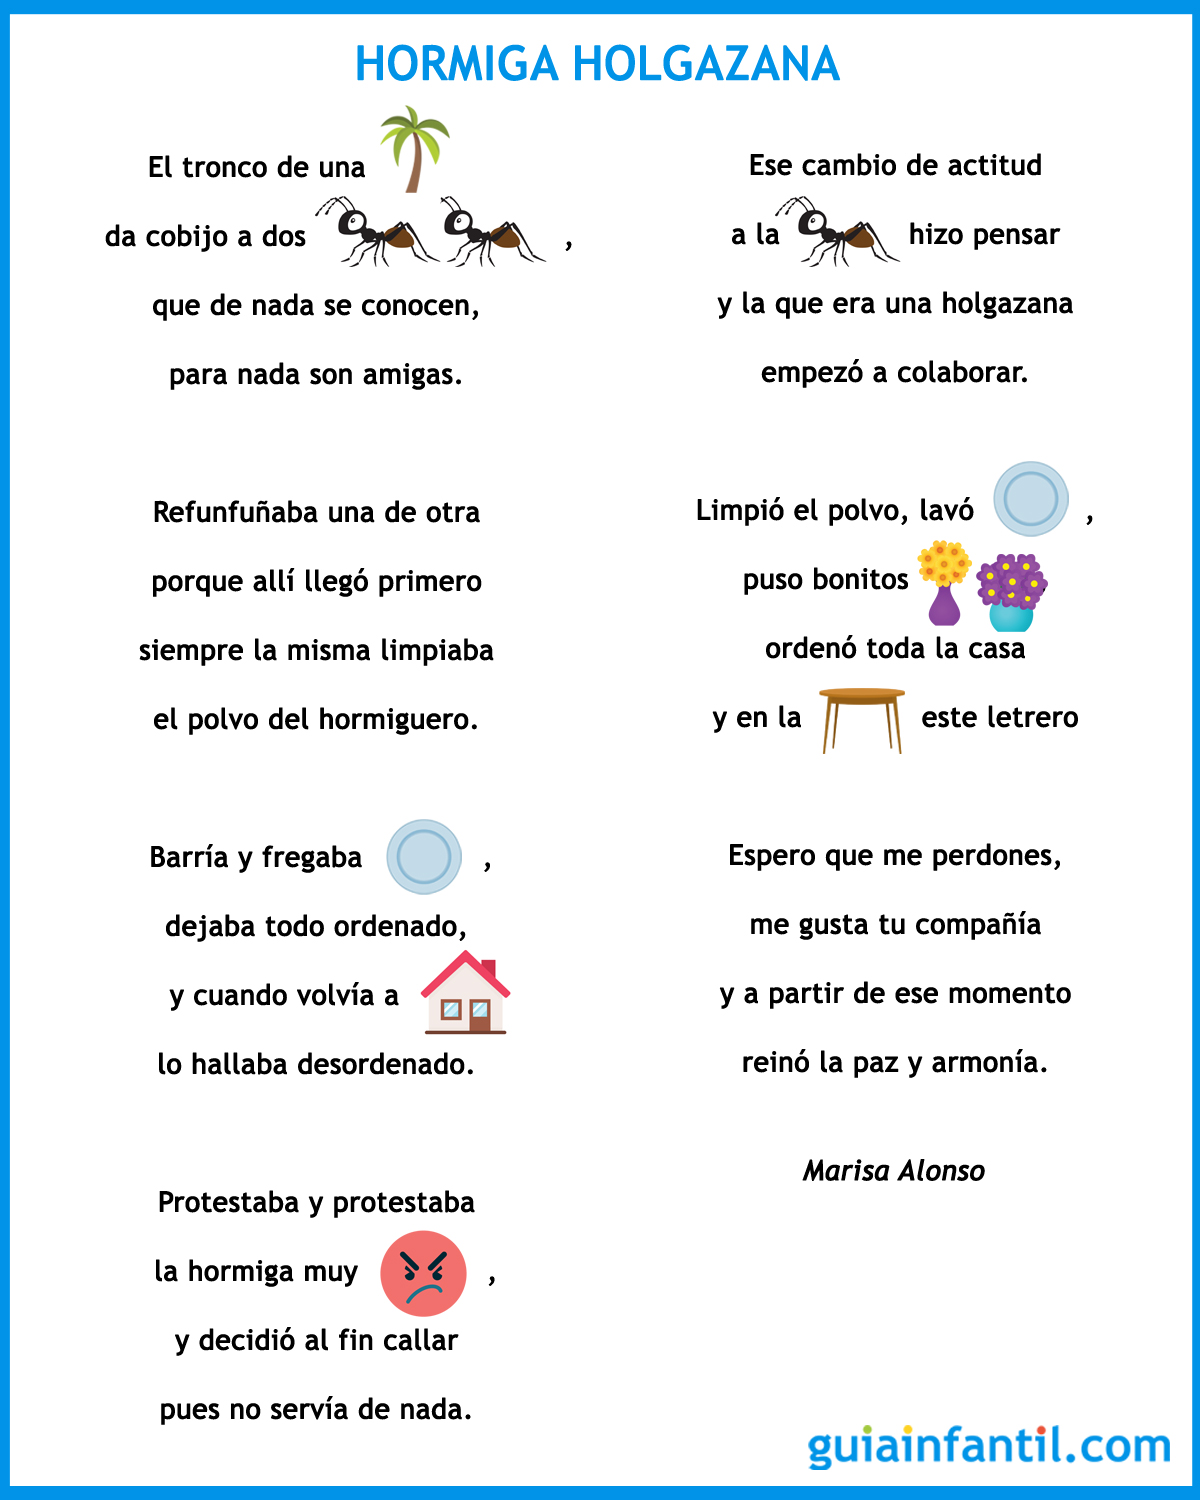 Hormiga holgazana. Poema corto con pictogramas para niños desordenados